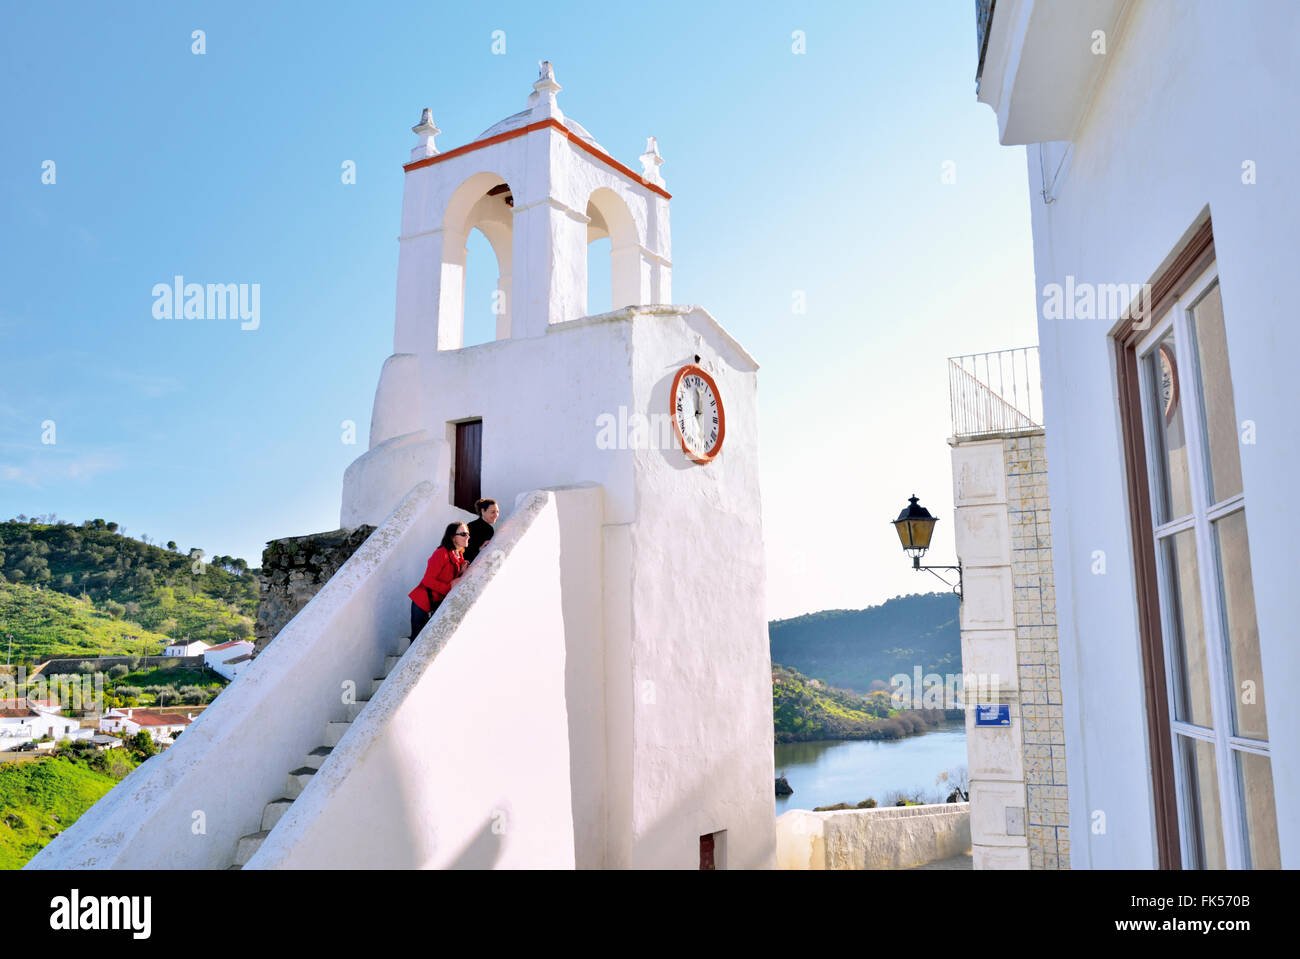 Portogallo Alentejo: due donne guardando da le fasi della storica torre dell'orologio di Mértola presso il fiume Guadiana Foto Stock